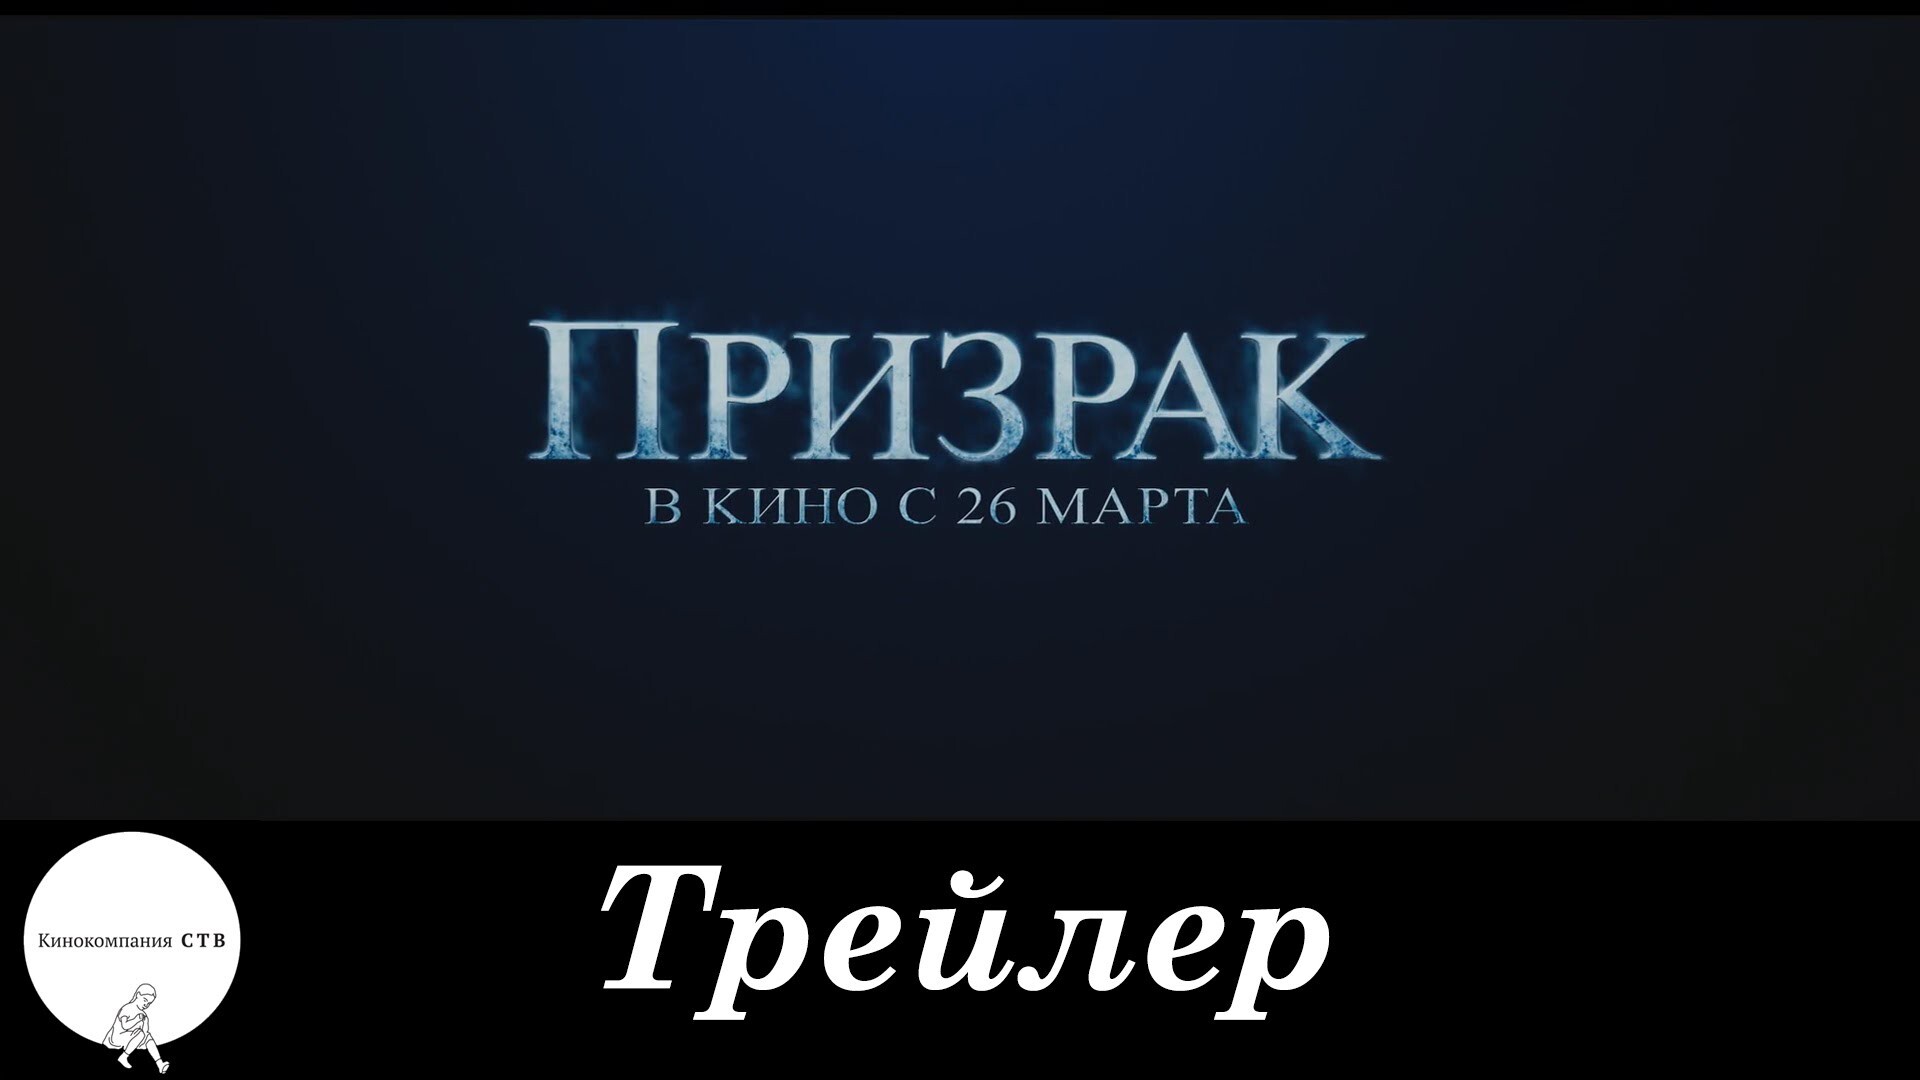 Лучшие Российские фильмы по версии КиноПоиск 2015г